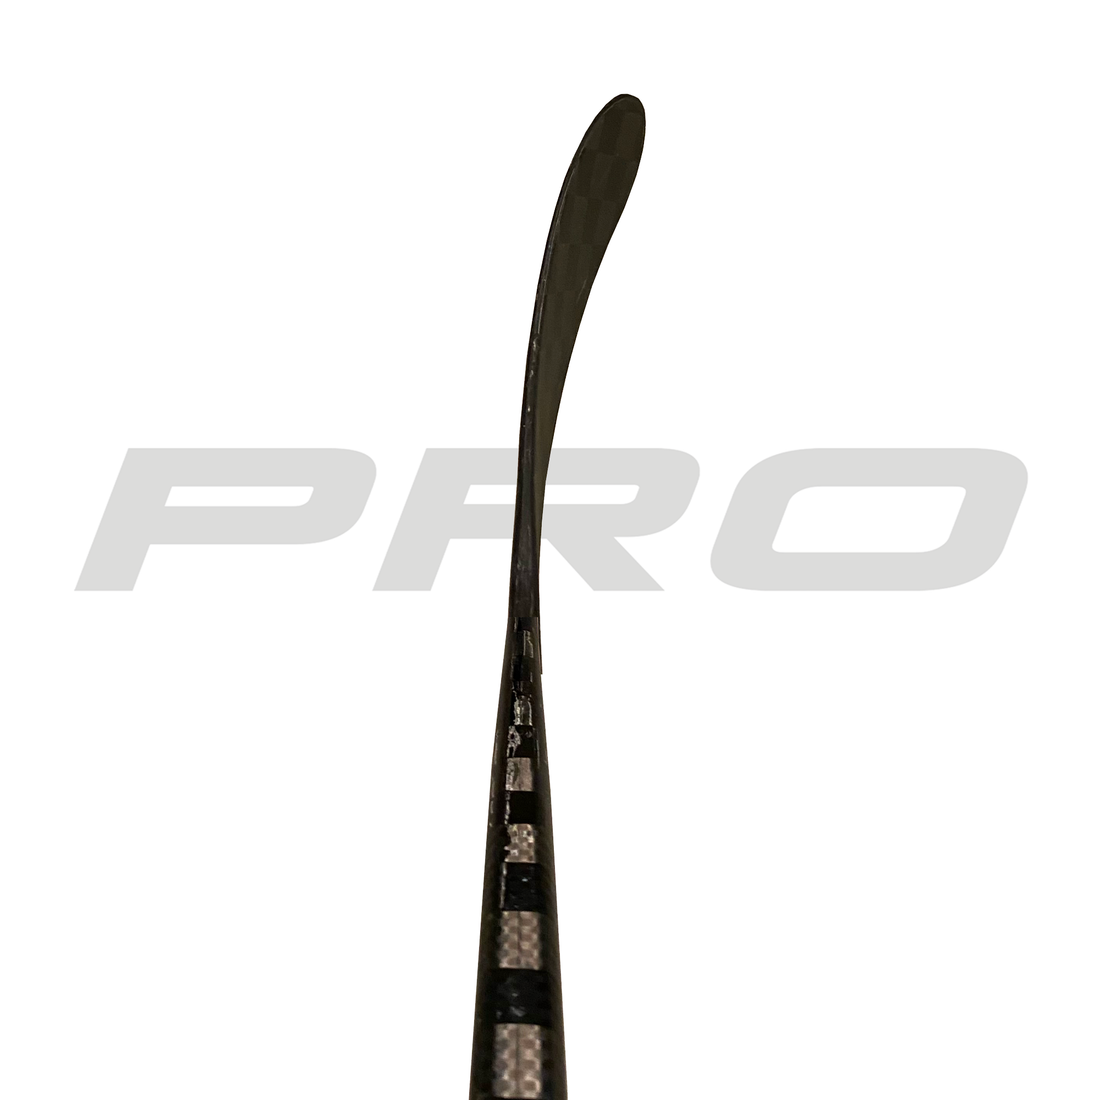 PRO28M (ST: Seider Pro) - Red Line (375 G) - Pro Stock Hockey Stick - Left